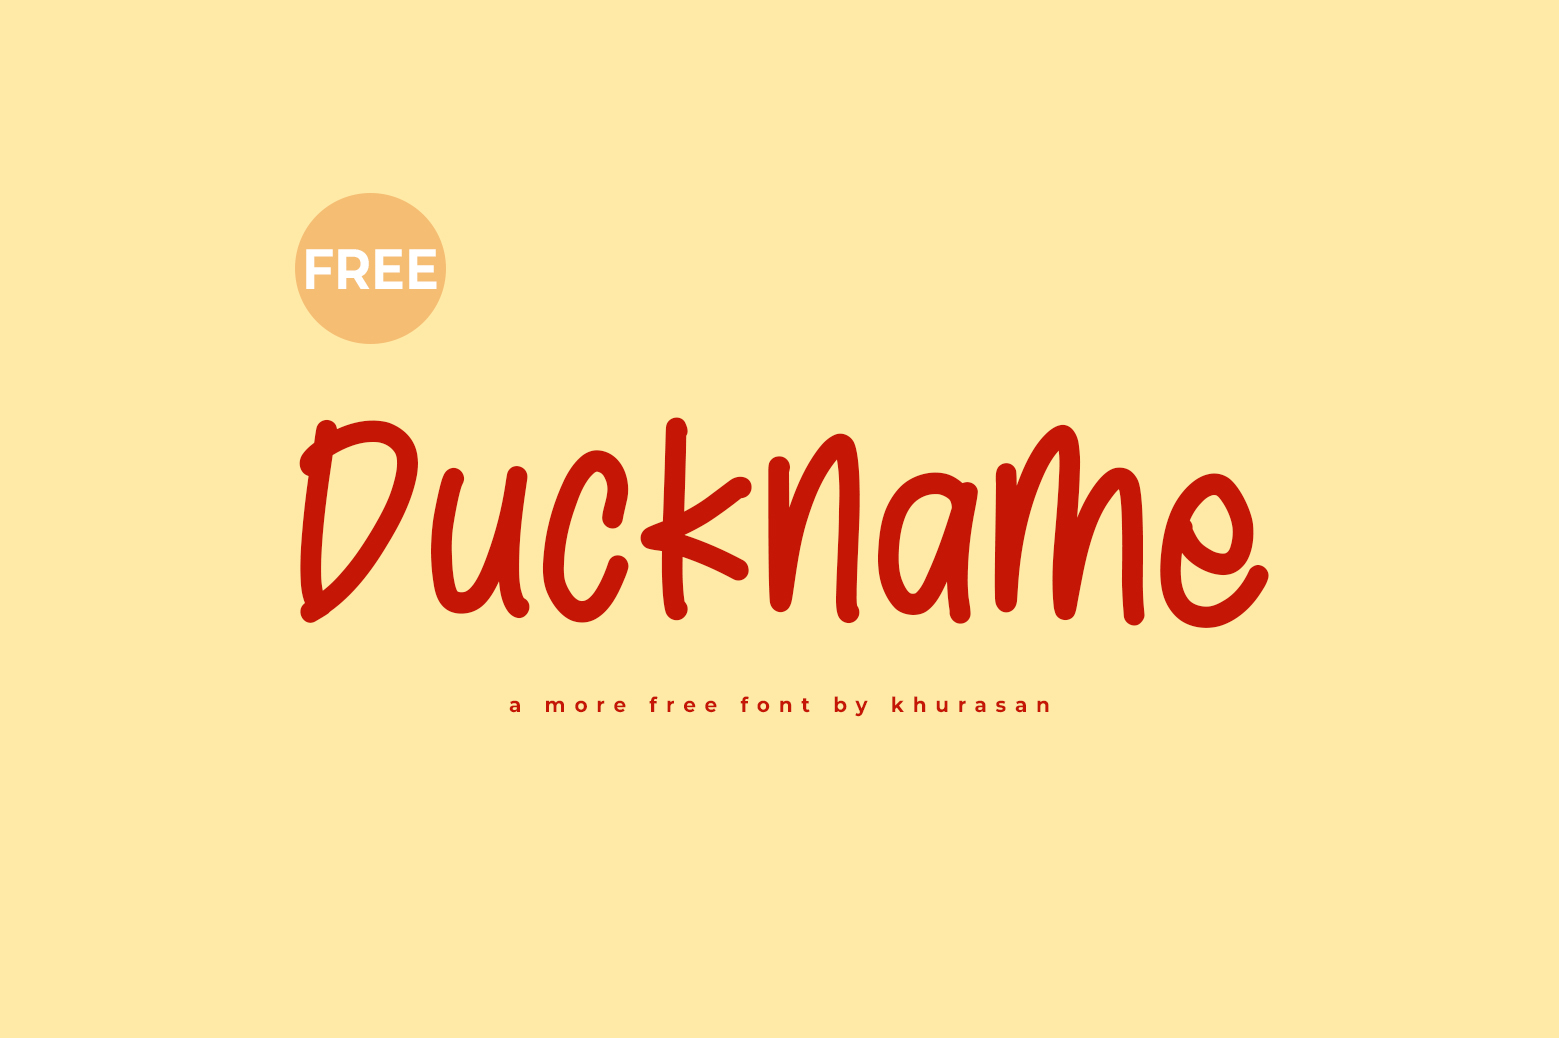 Duckname